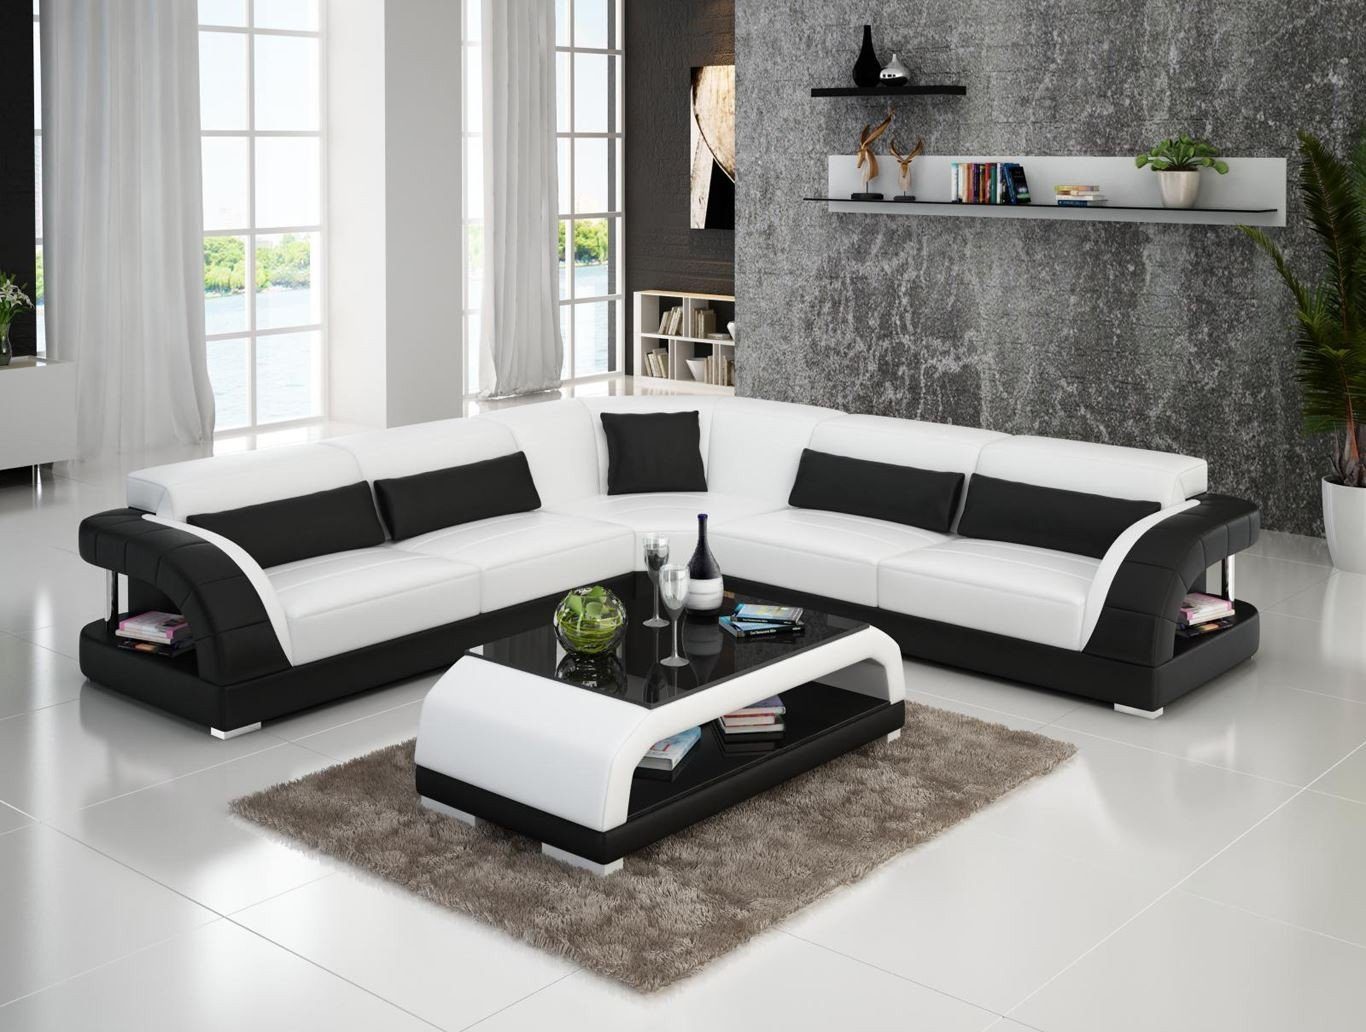 JVmoebel Ecksofa Couch Ecksofa Leder Wohnlandschaft Garnitur Design Modern, Made in Europe Weiß/Schwarz